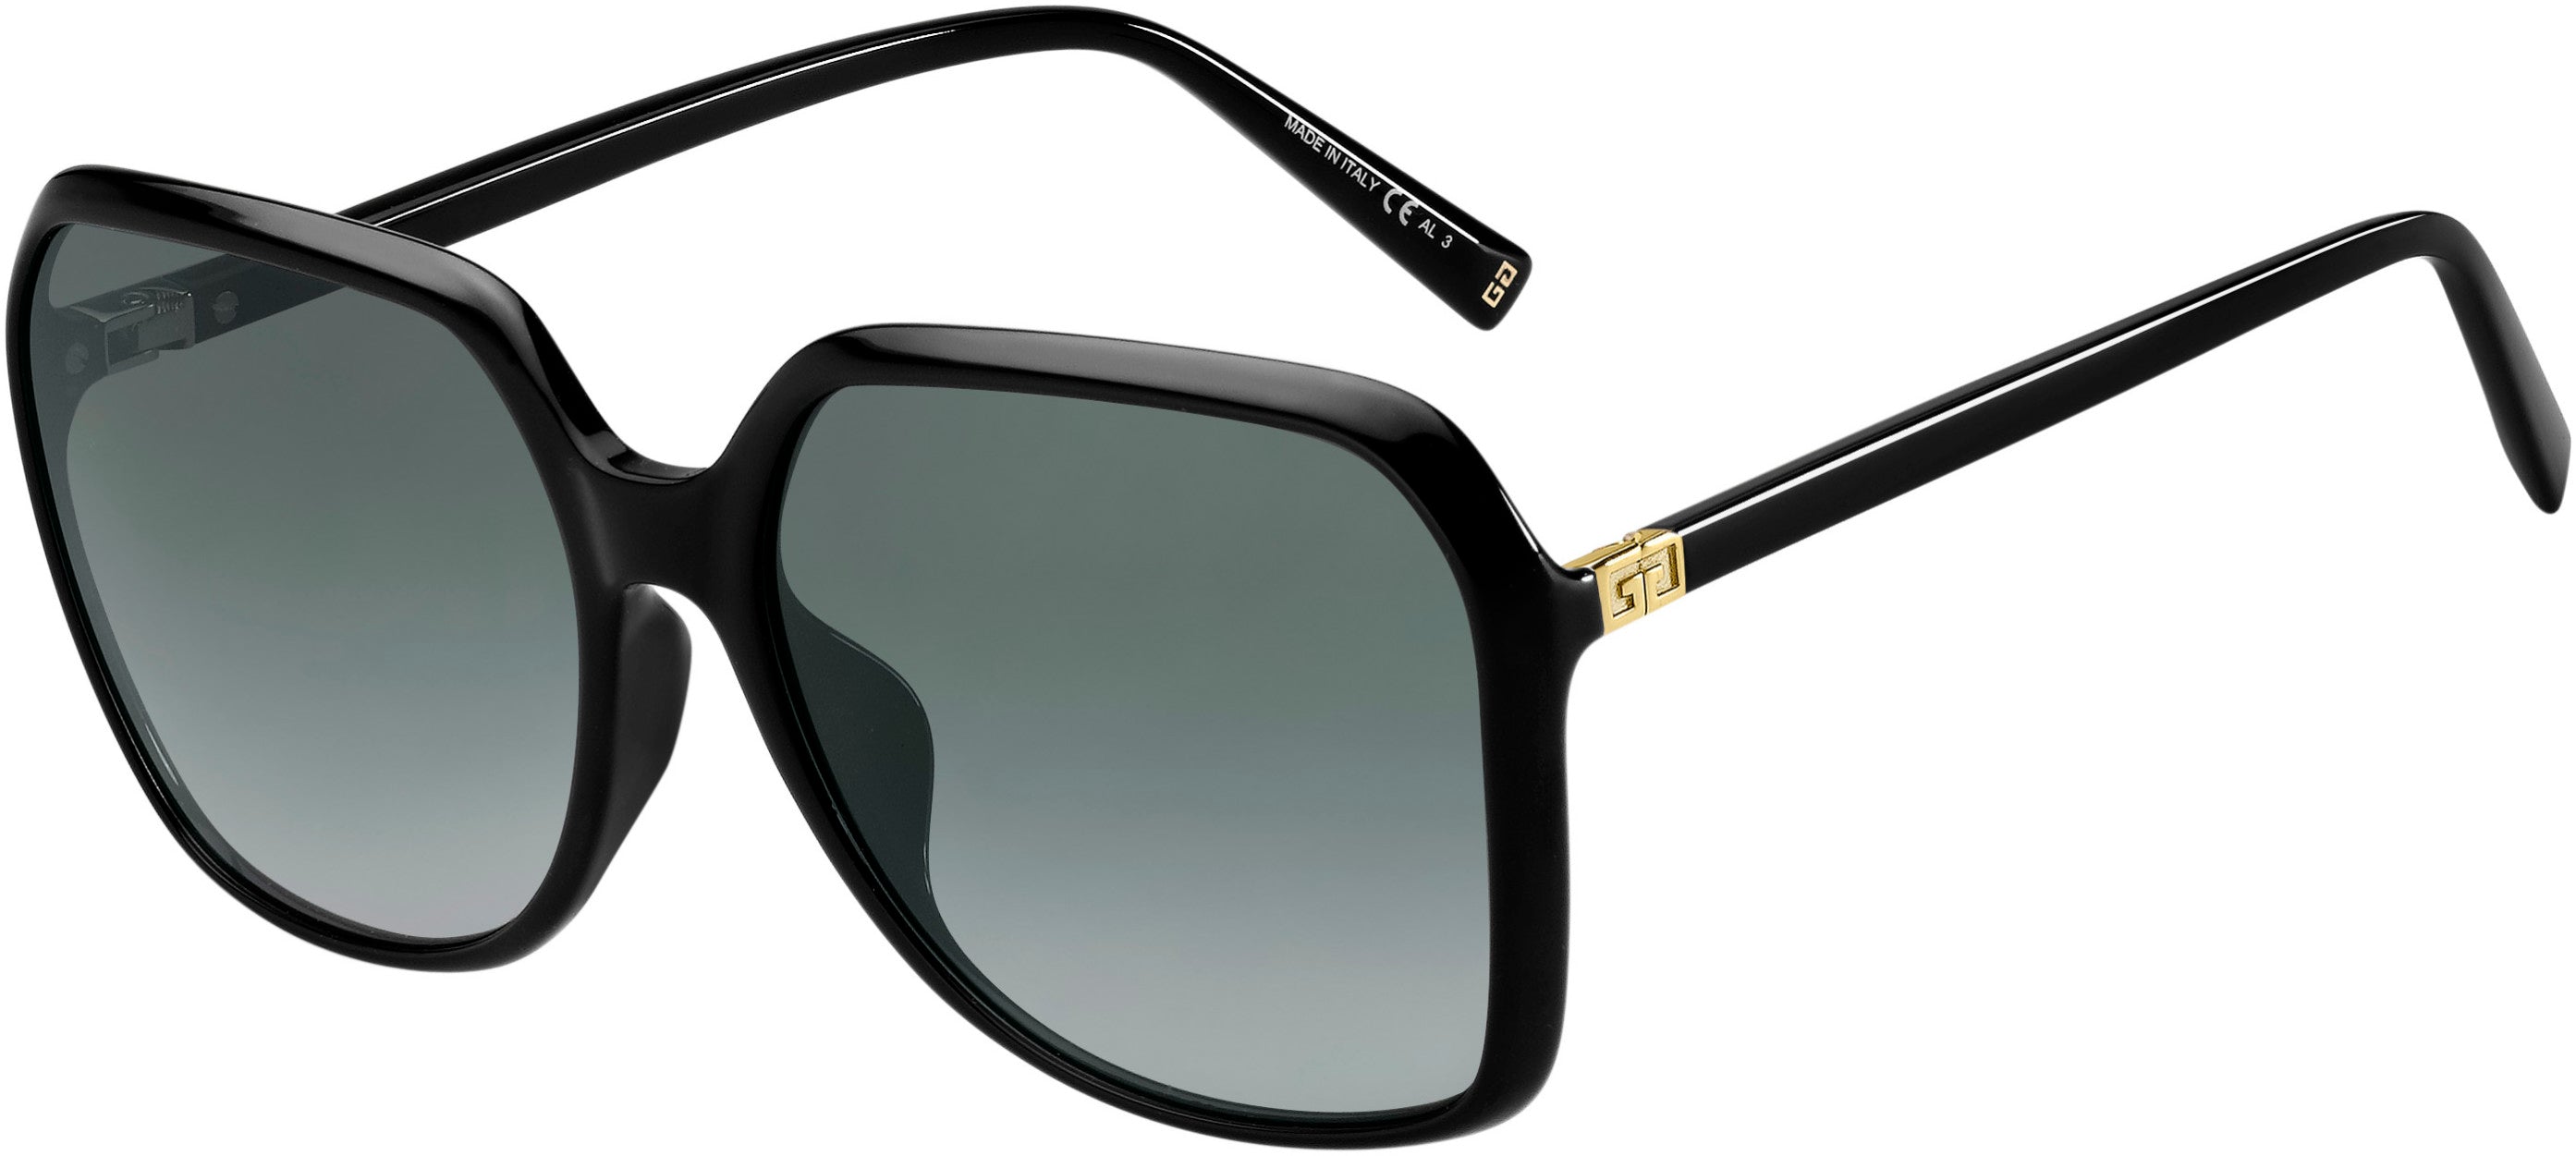  Givenchy 7187/F/S Square Sunglasses 0807-0807  Black (9O Dark Gray Gradient)